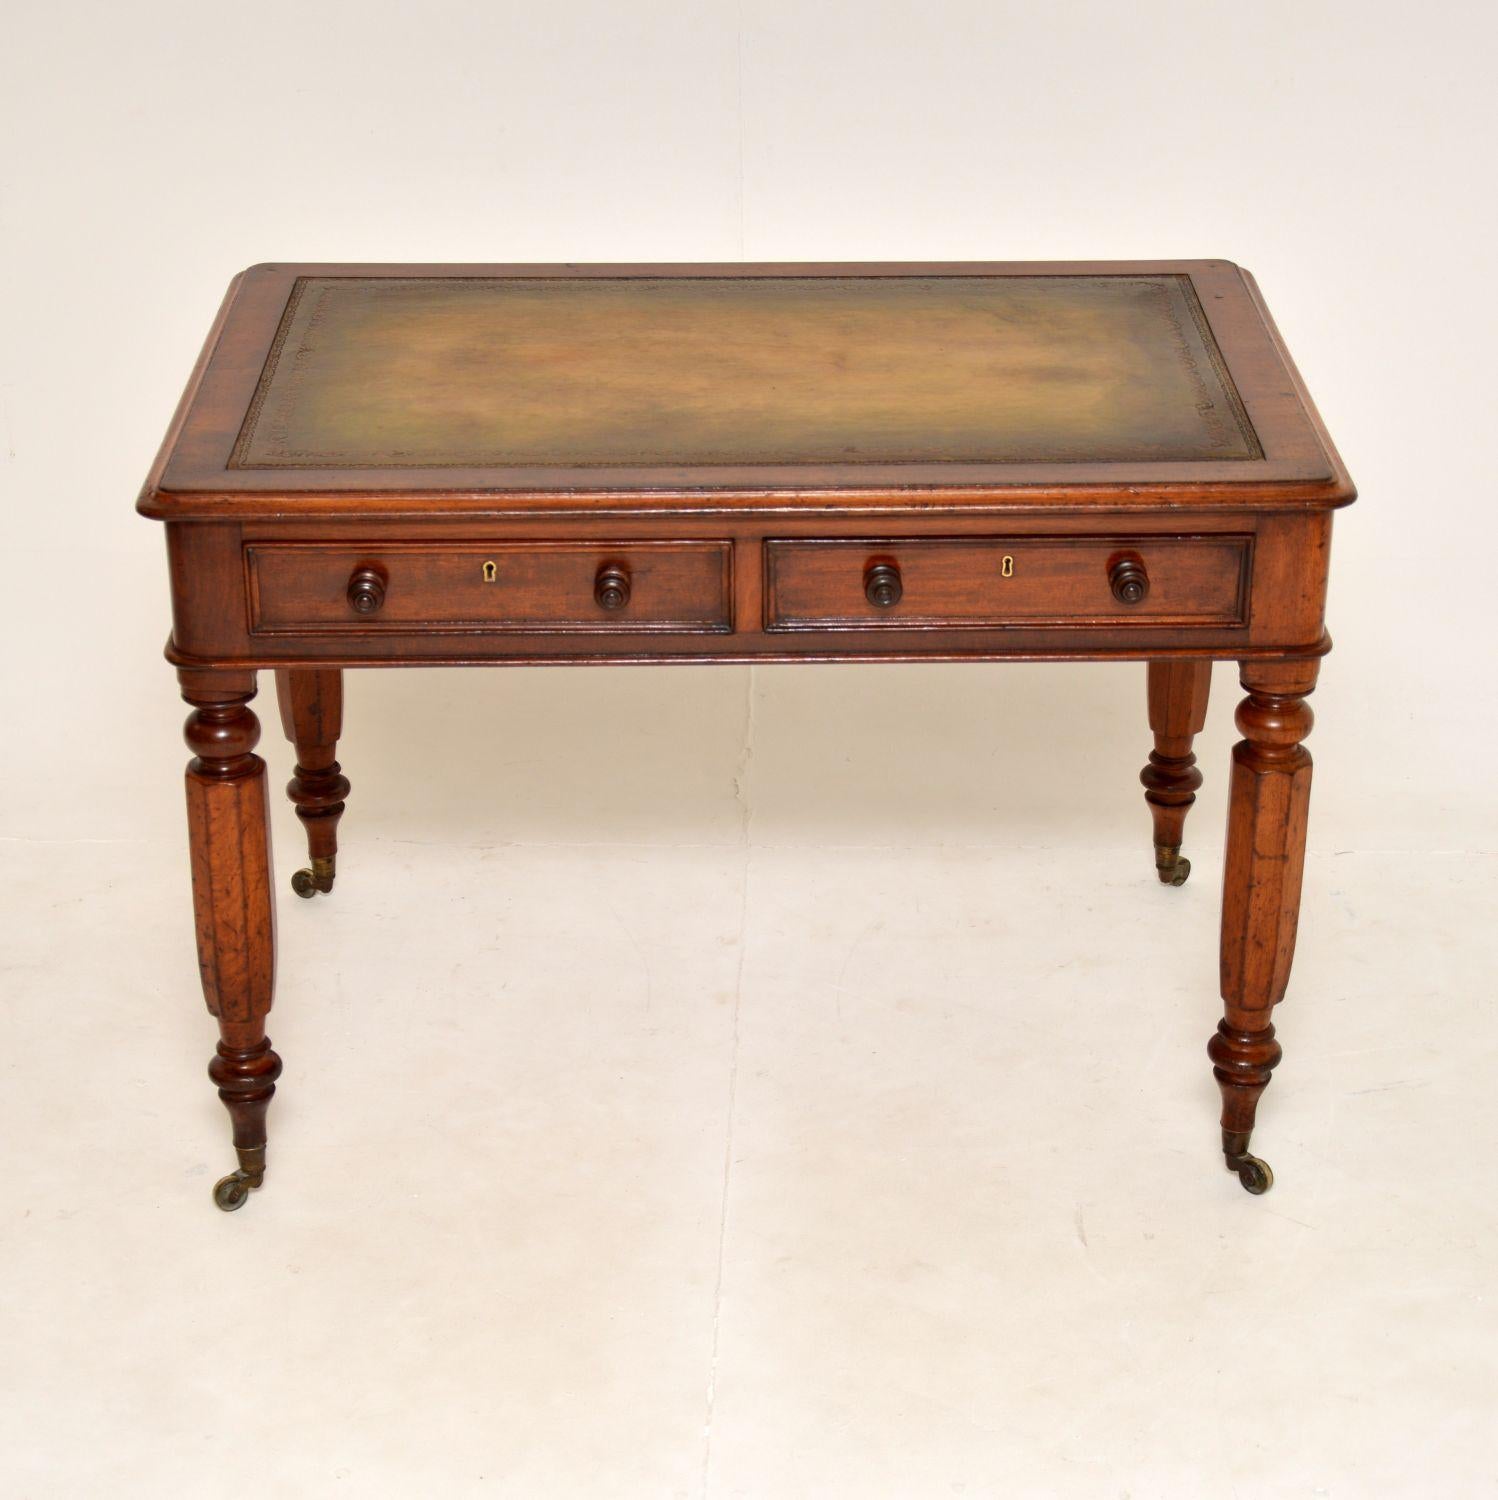 Eine fantastische Original William IV Zeitraum Schreibtisch / Schreibtisch. Sie wurde in England hergestellt und stammt aus der Zeit um 1830-1840.

Die Qualität ist hervorragend, und das Gerät hat nützliche Proportionen und eine großzügige